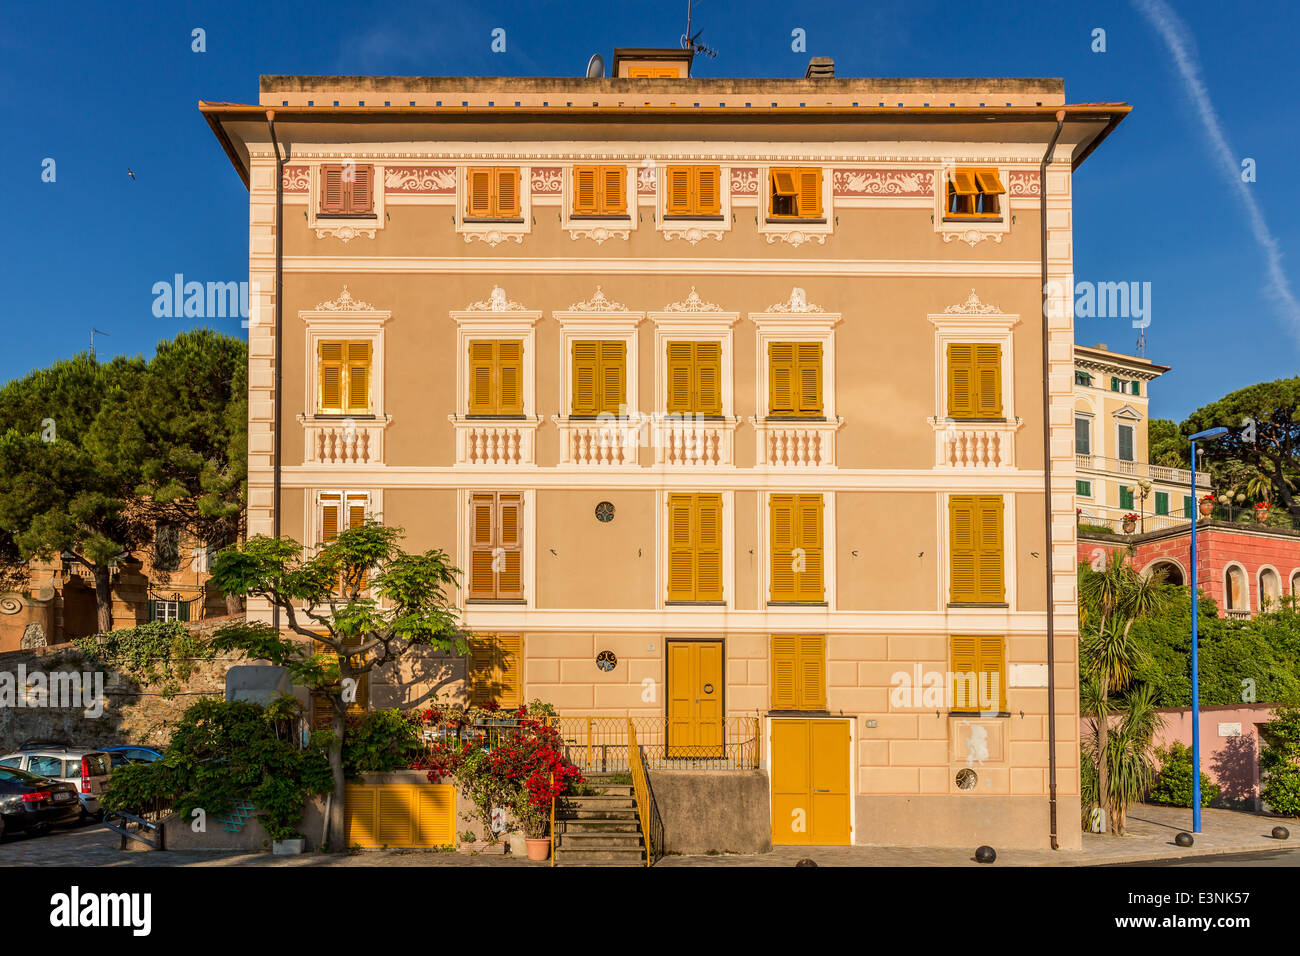 Maison colorée, Sestri Levante, ligurie, italie Banque D'Images